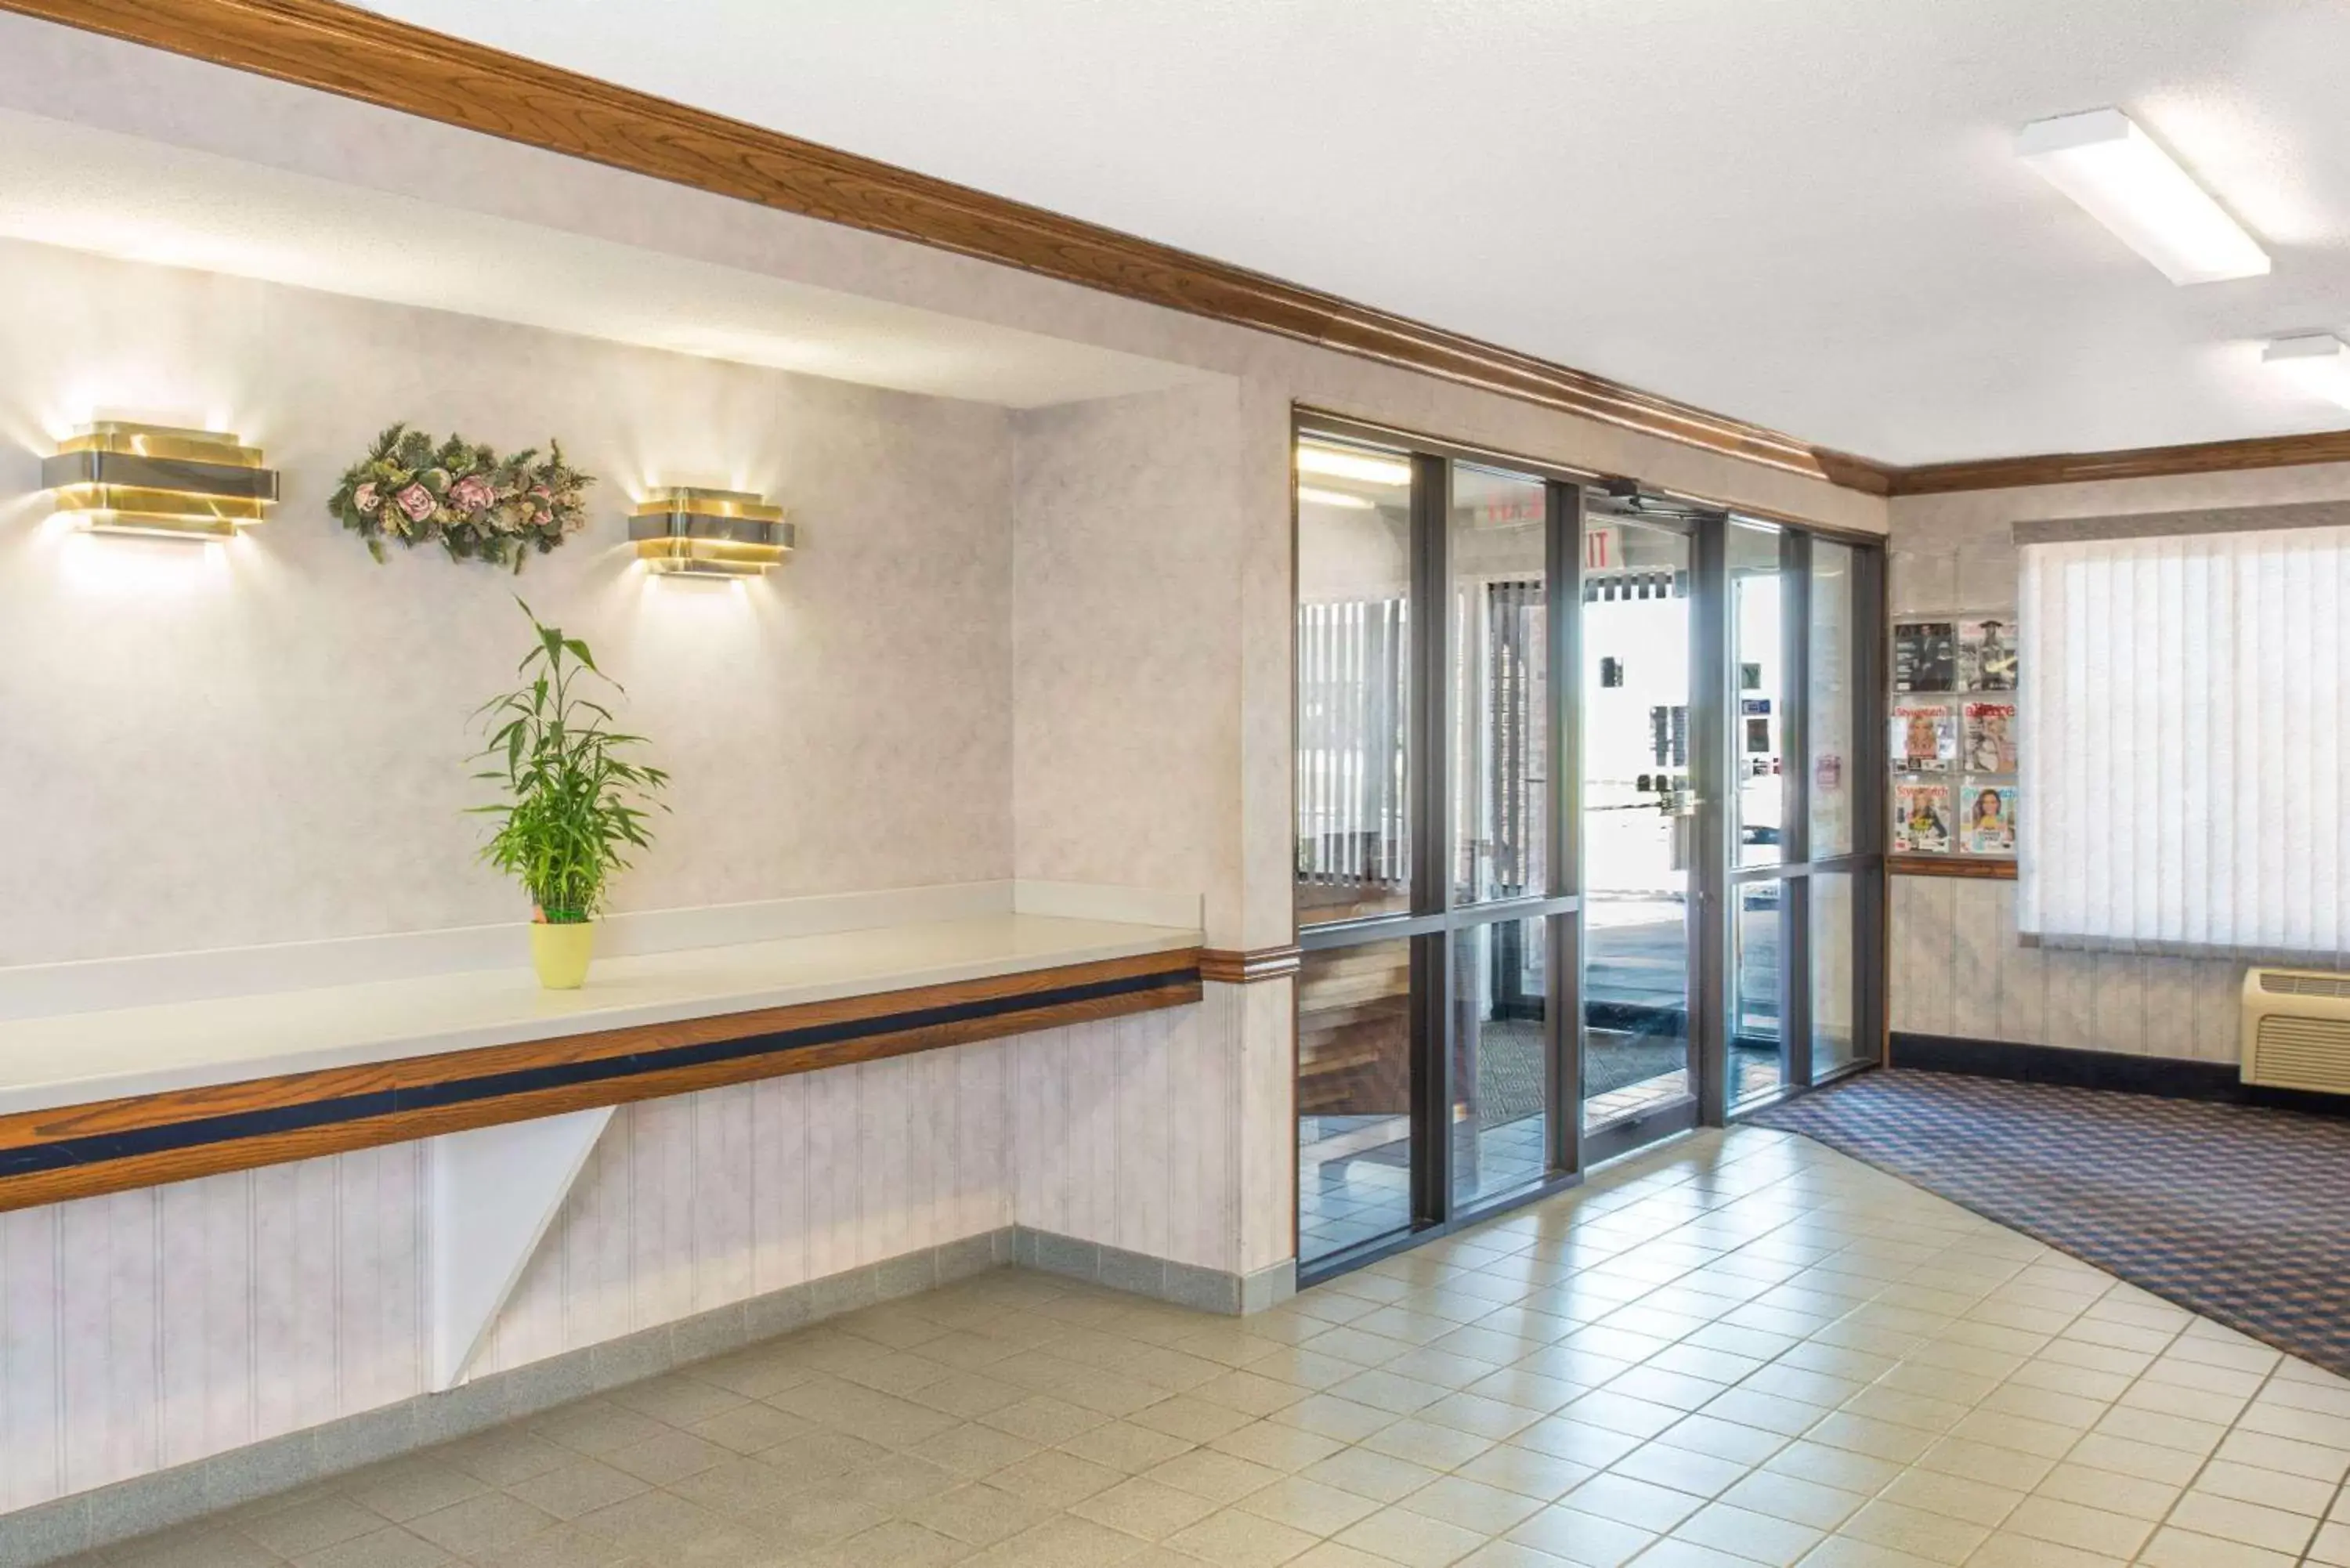 Lobby or reception in Days Inn by Wyndham Pontoon Beach